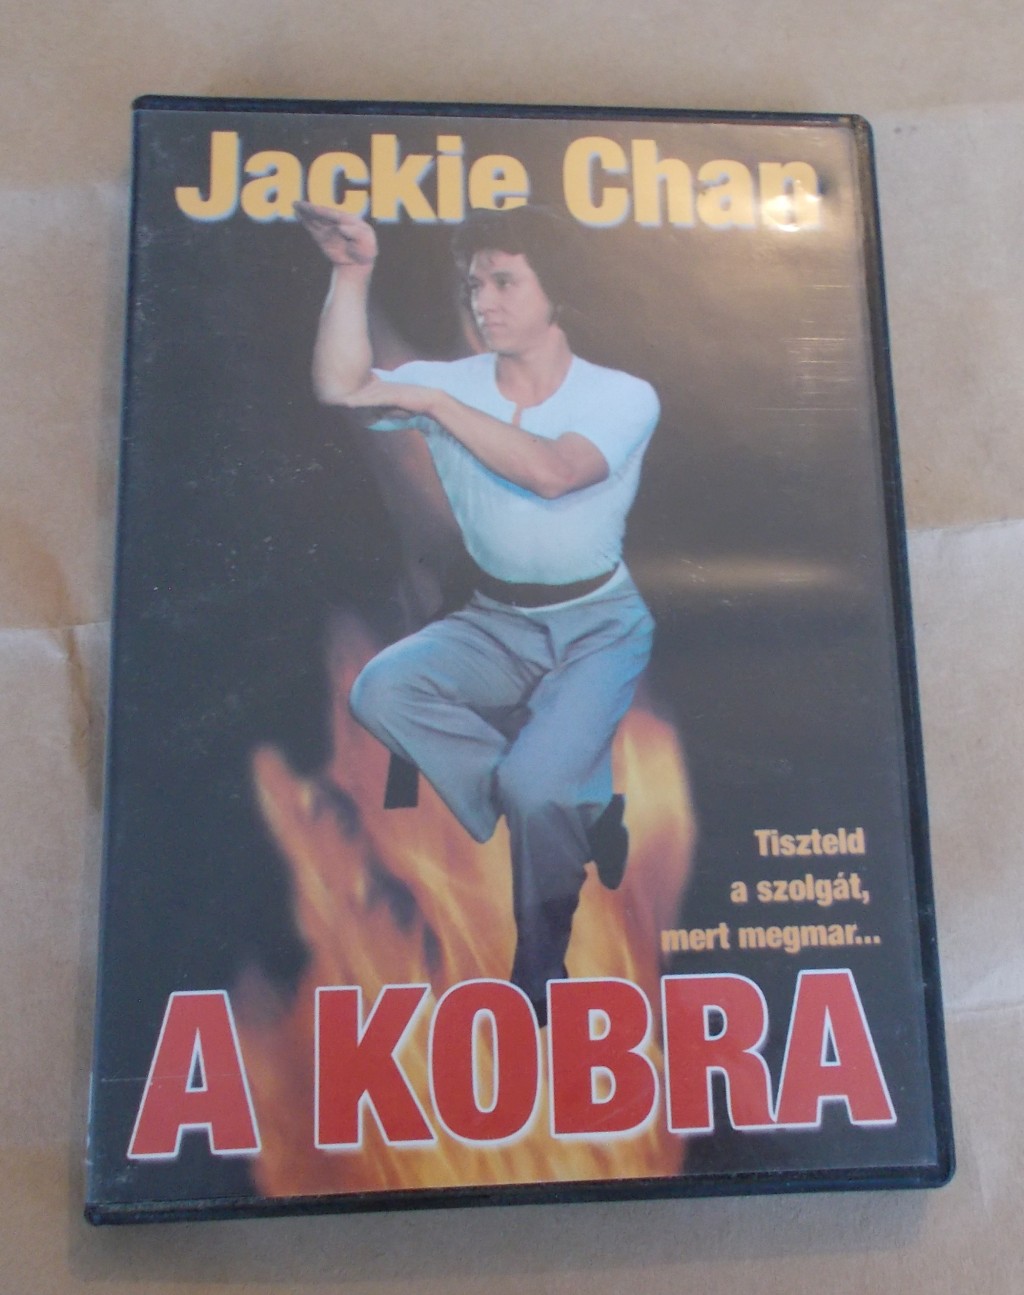 Jackie Chan A Kobra eredeti DVD

Jackie Chan A Kobra eredeti DVD
Tiszteld a szolgát, mert megmar...